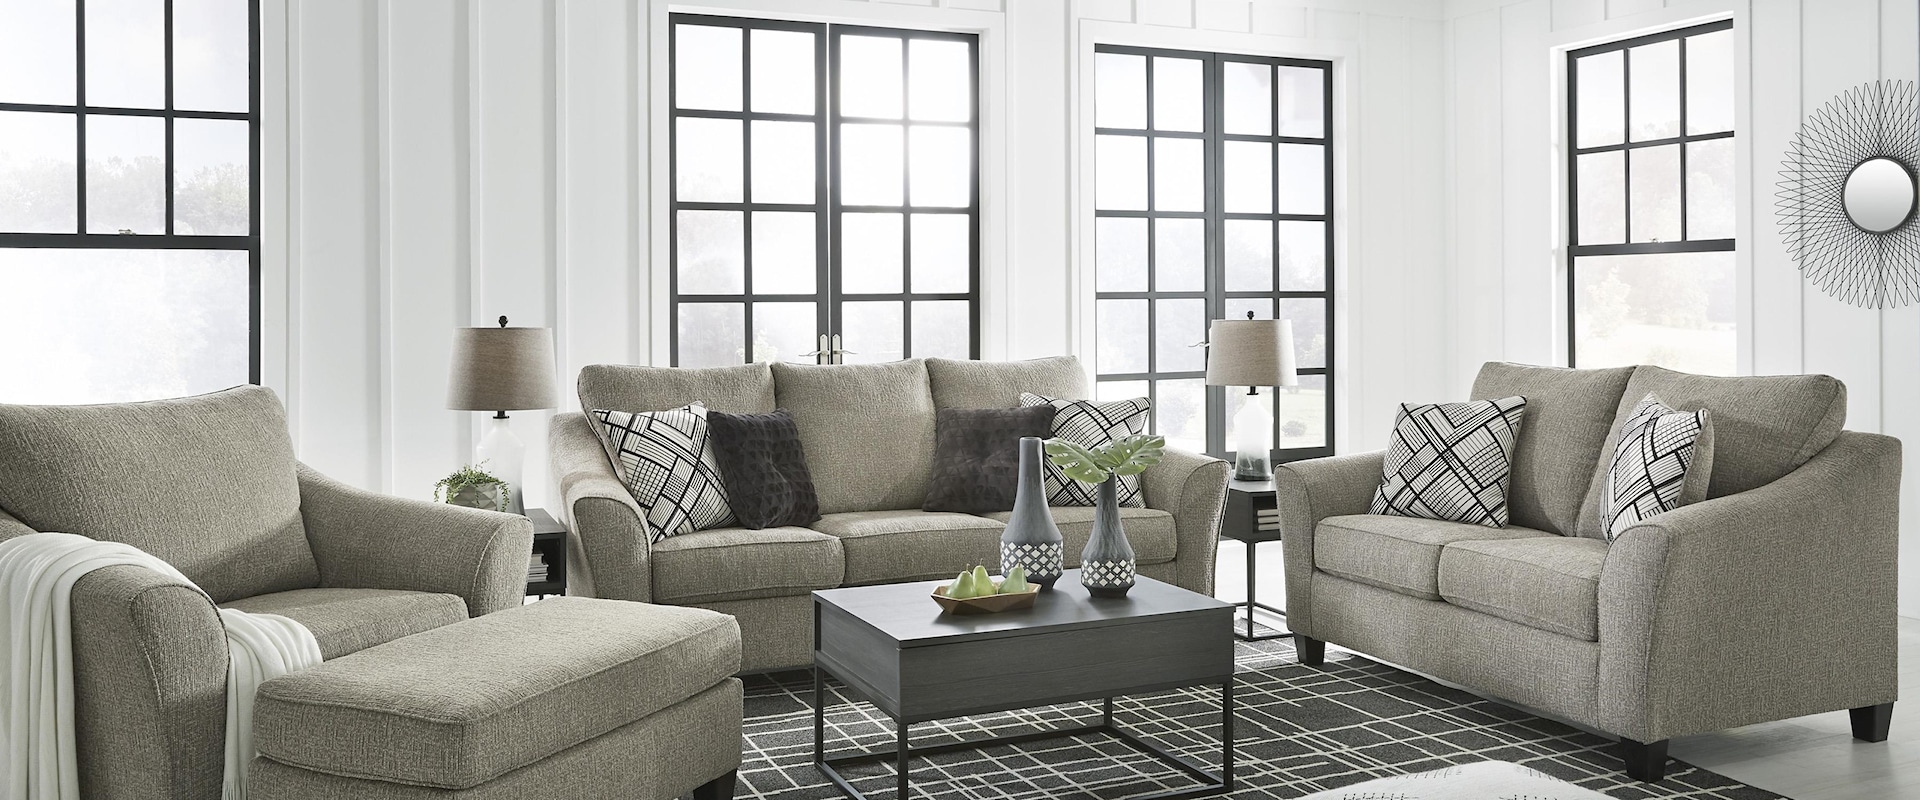 Platinum Sofa, Chair and Ottoman Set